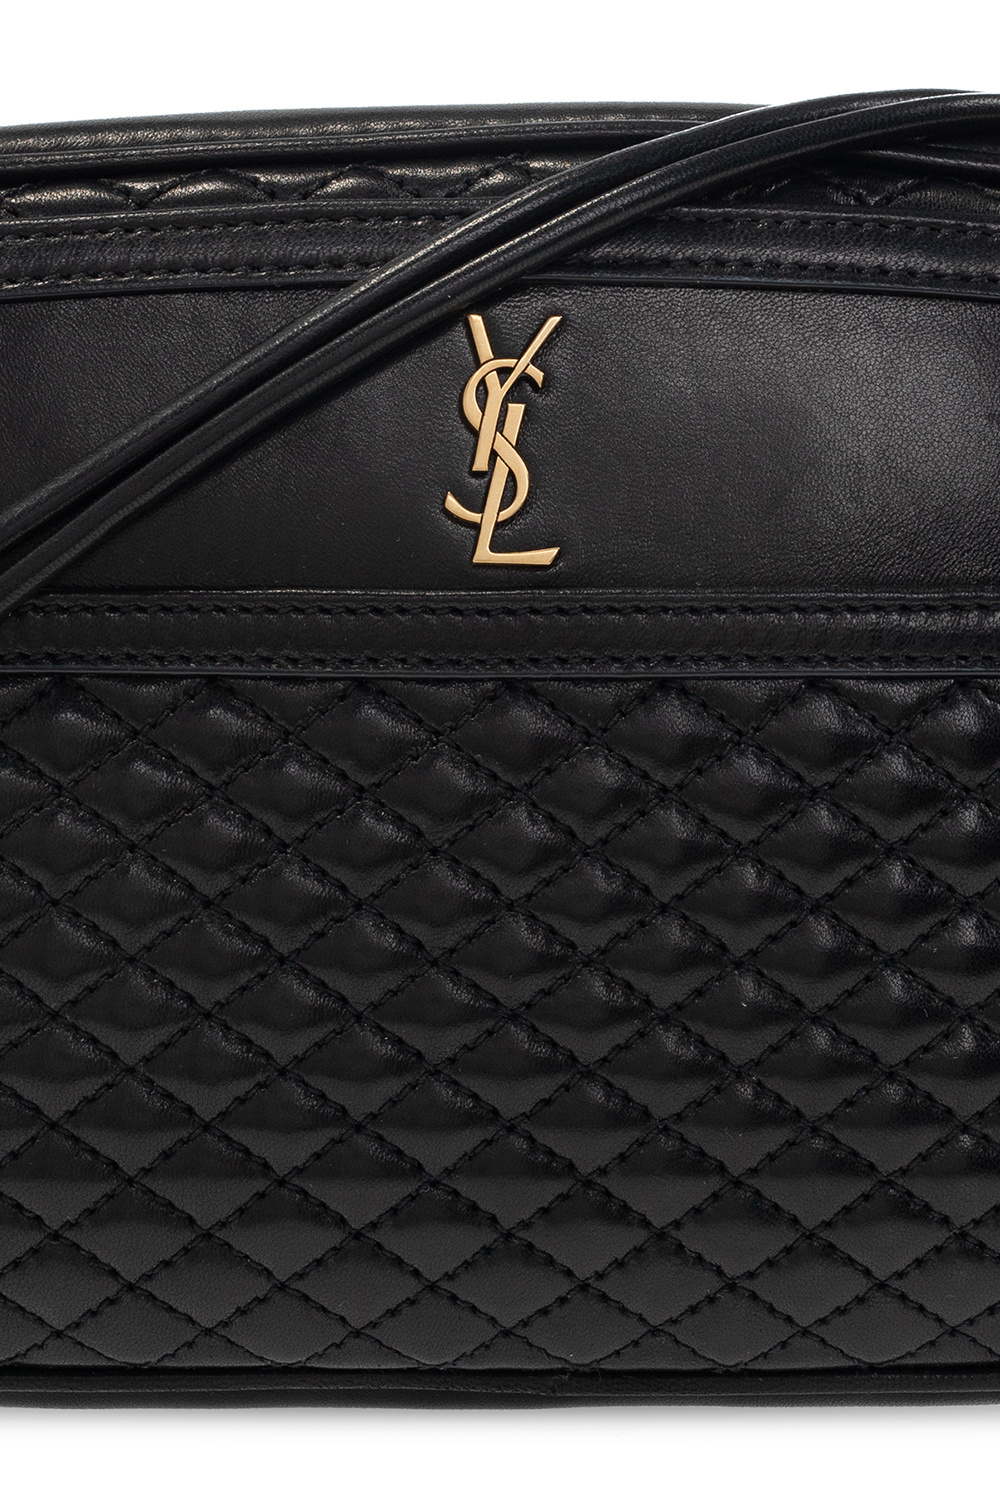 ❤️SOLD❤️Authentic Saint Laurent Victoire Chain Bag